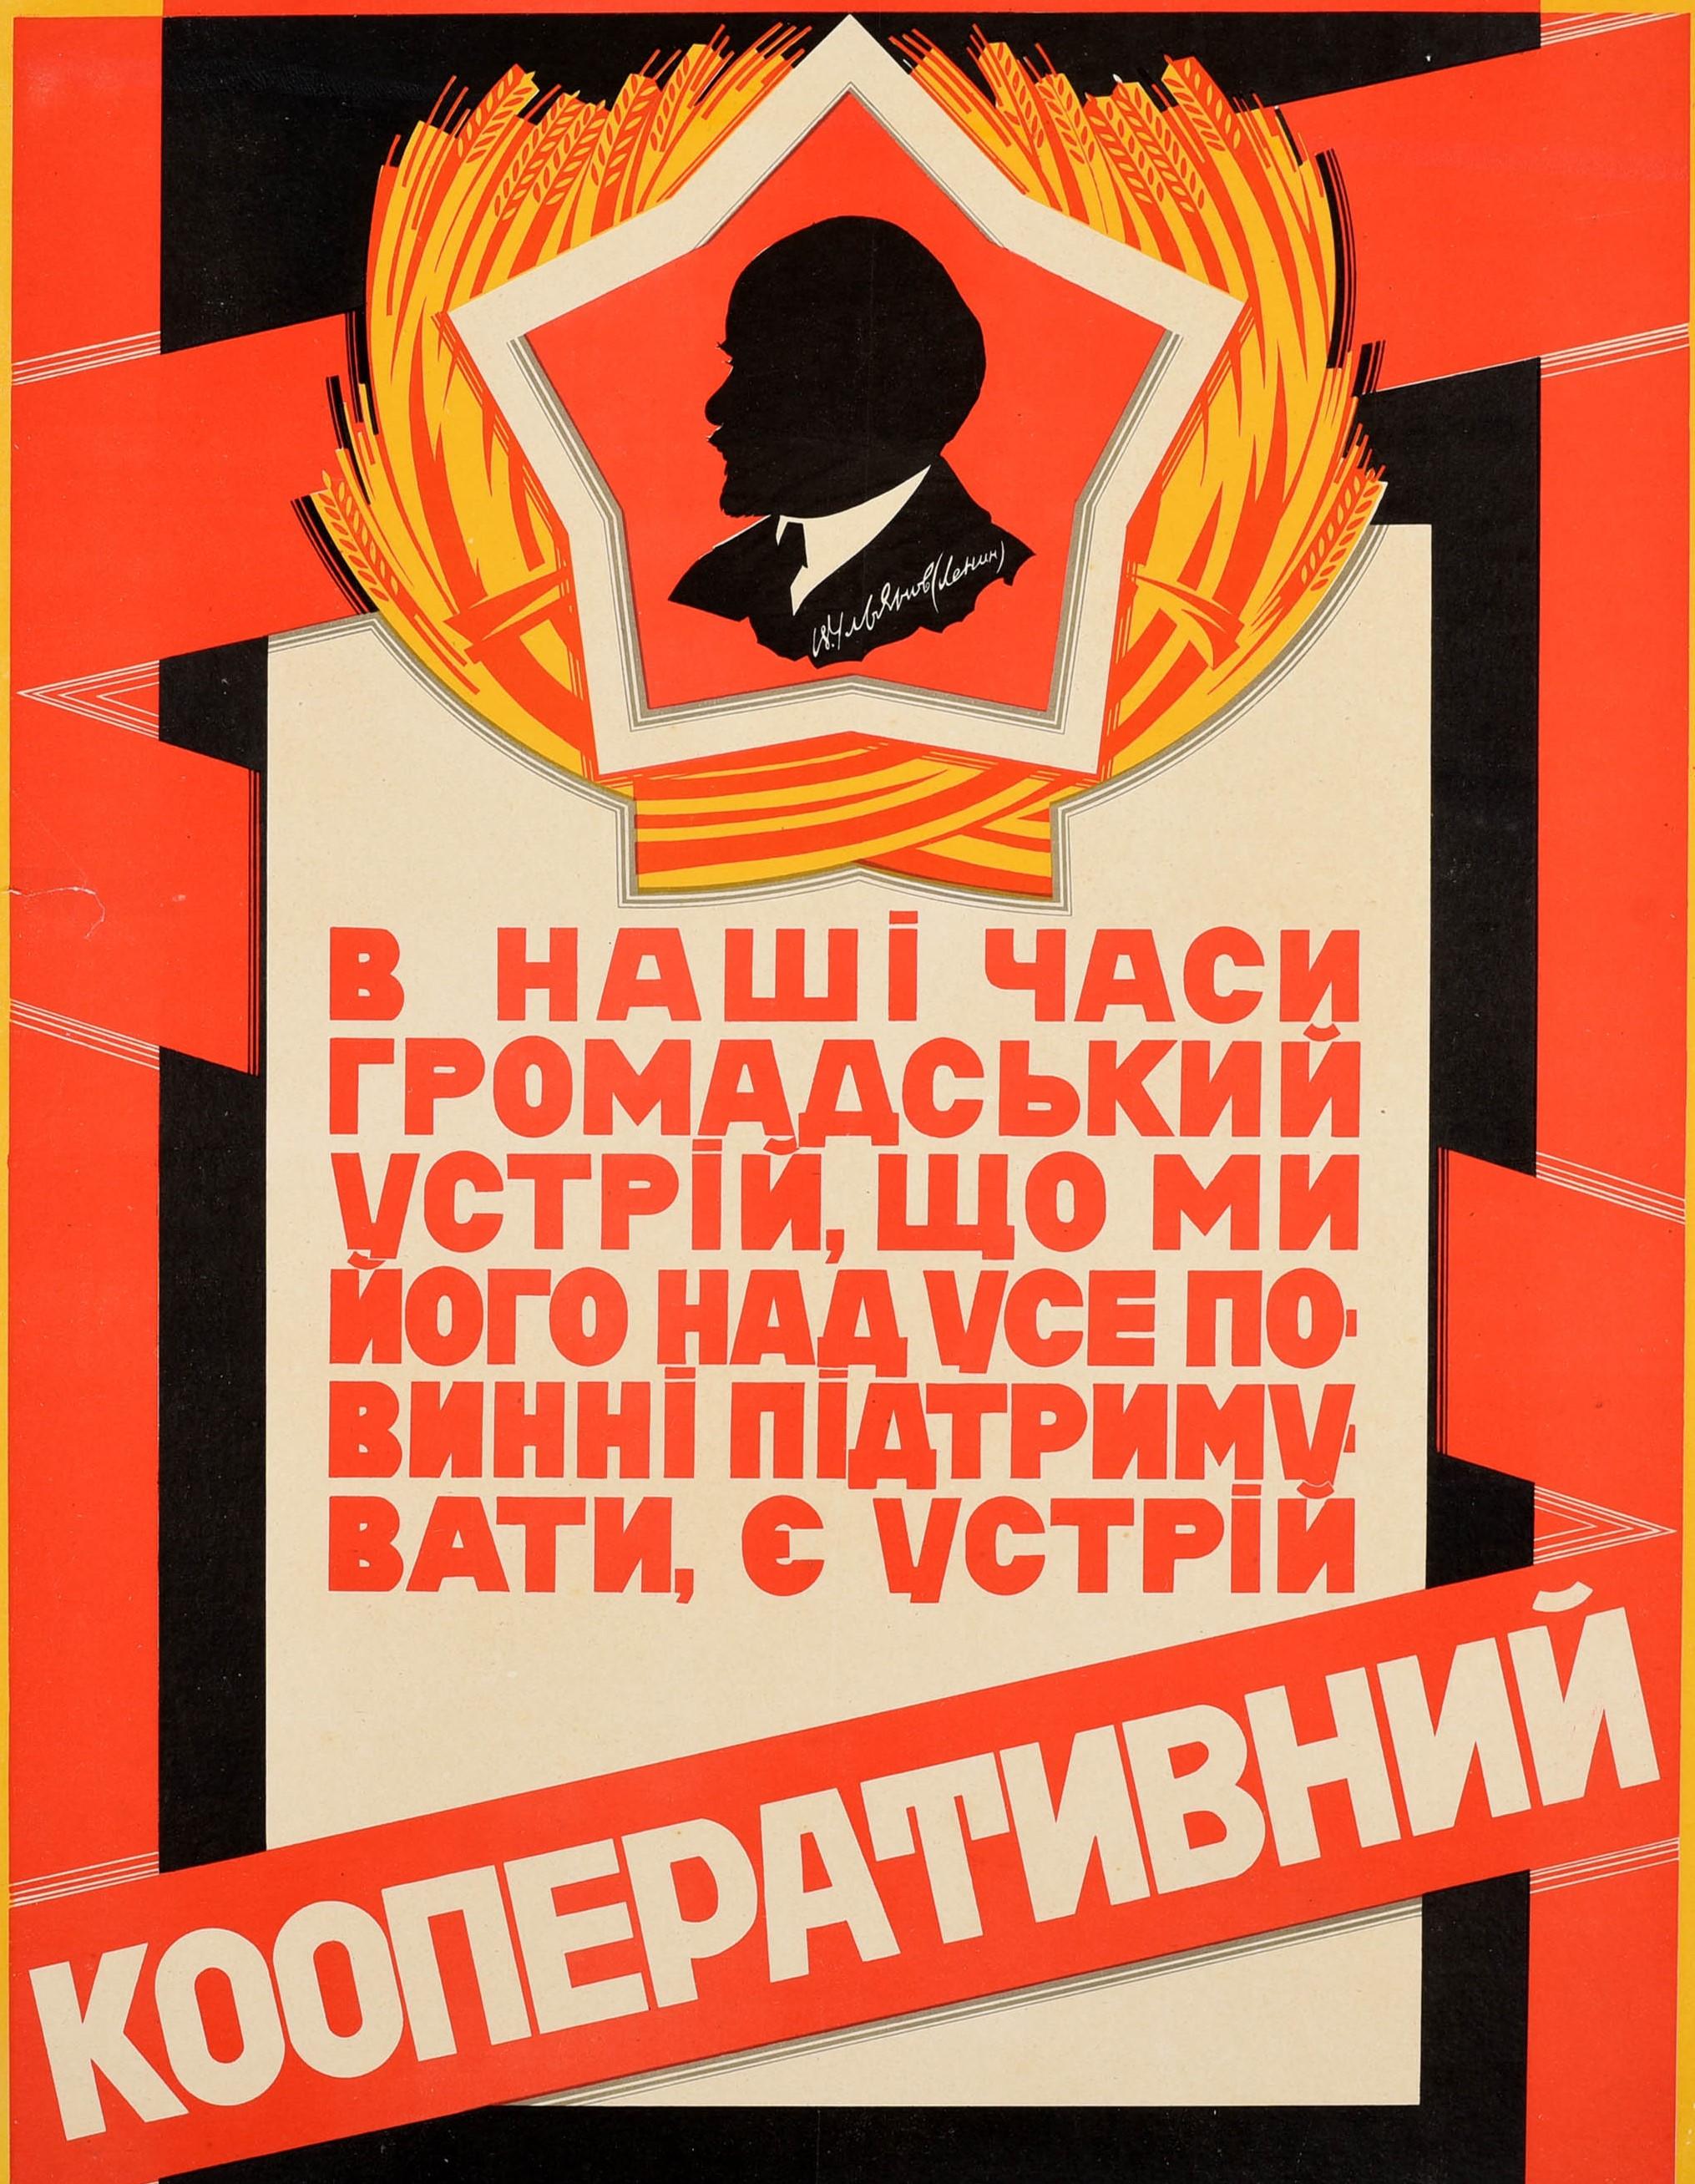 Originales sowjetisches Propagandaplakat des Konstruktivismus - In unserer Zeit ist das öffentliche Sozialsystem, für dessen Unterstützung wir verantwortlich sind, die genossenschaftliche Gemeinschaft / в наші часи громадський громадський цстрій, що